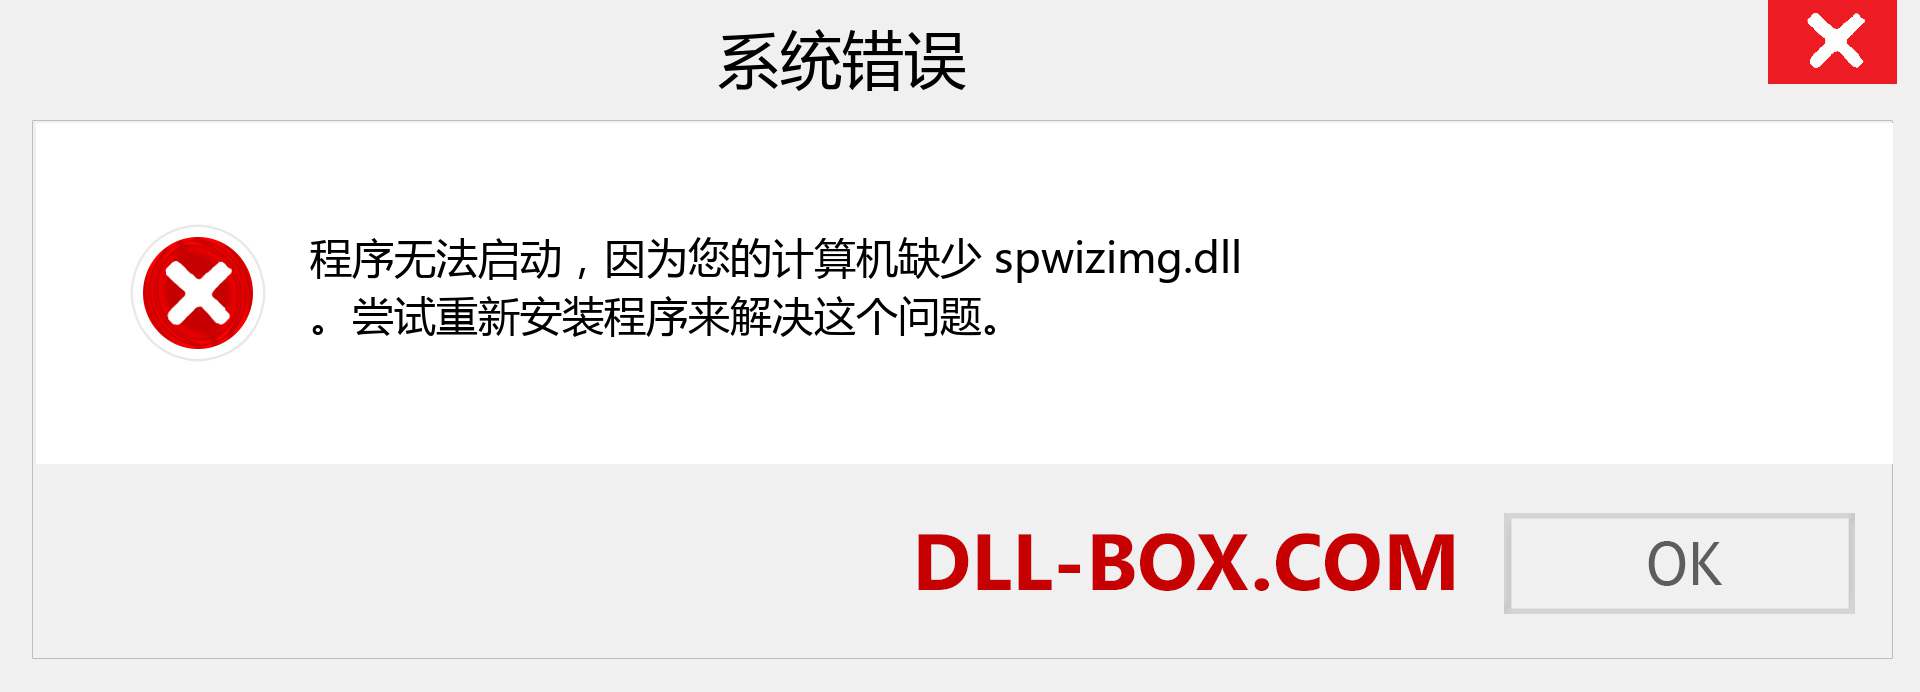 spwizimg.dll 文件丢失？。 适用于 Windows 7、8、10 的下载 - 修复 Windows、照片、图像上的 spwizimg dll 丢失错误